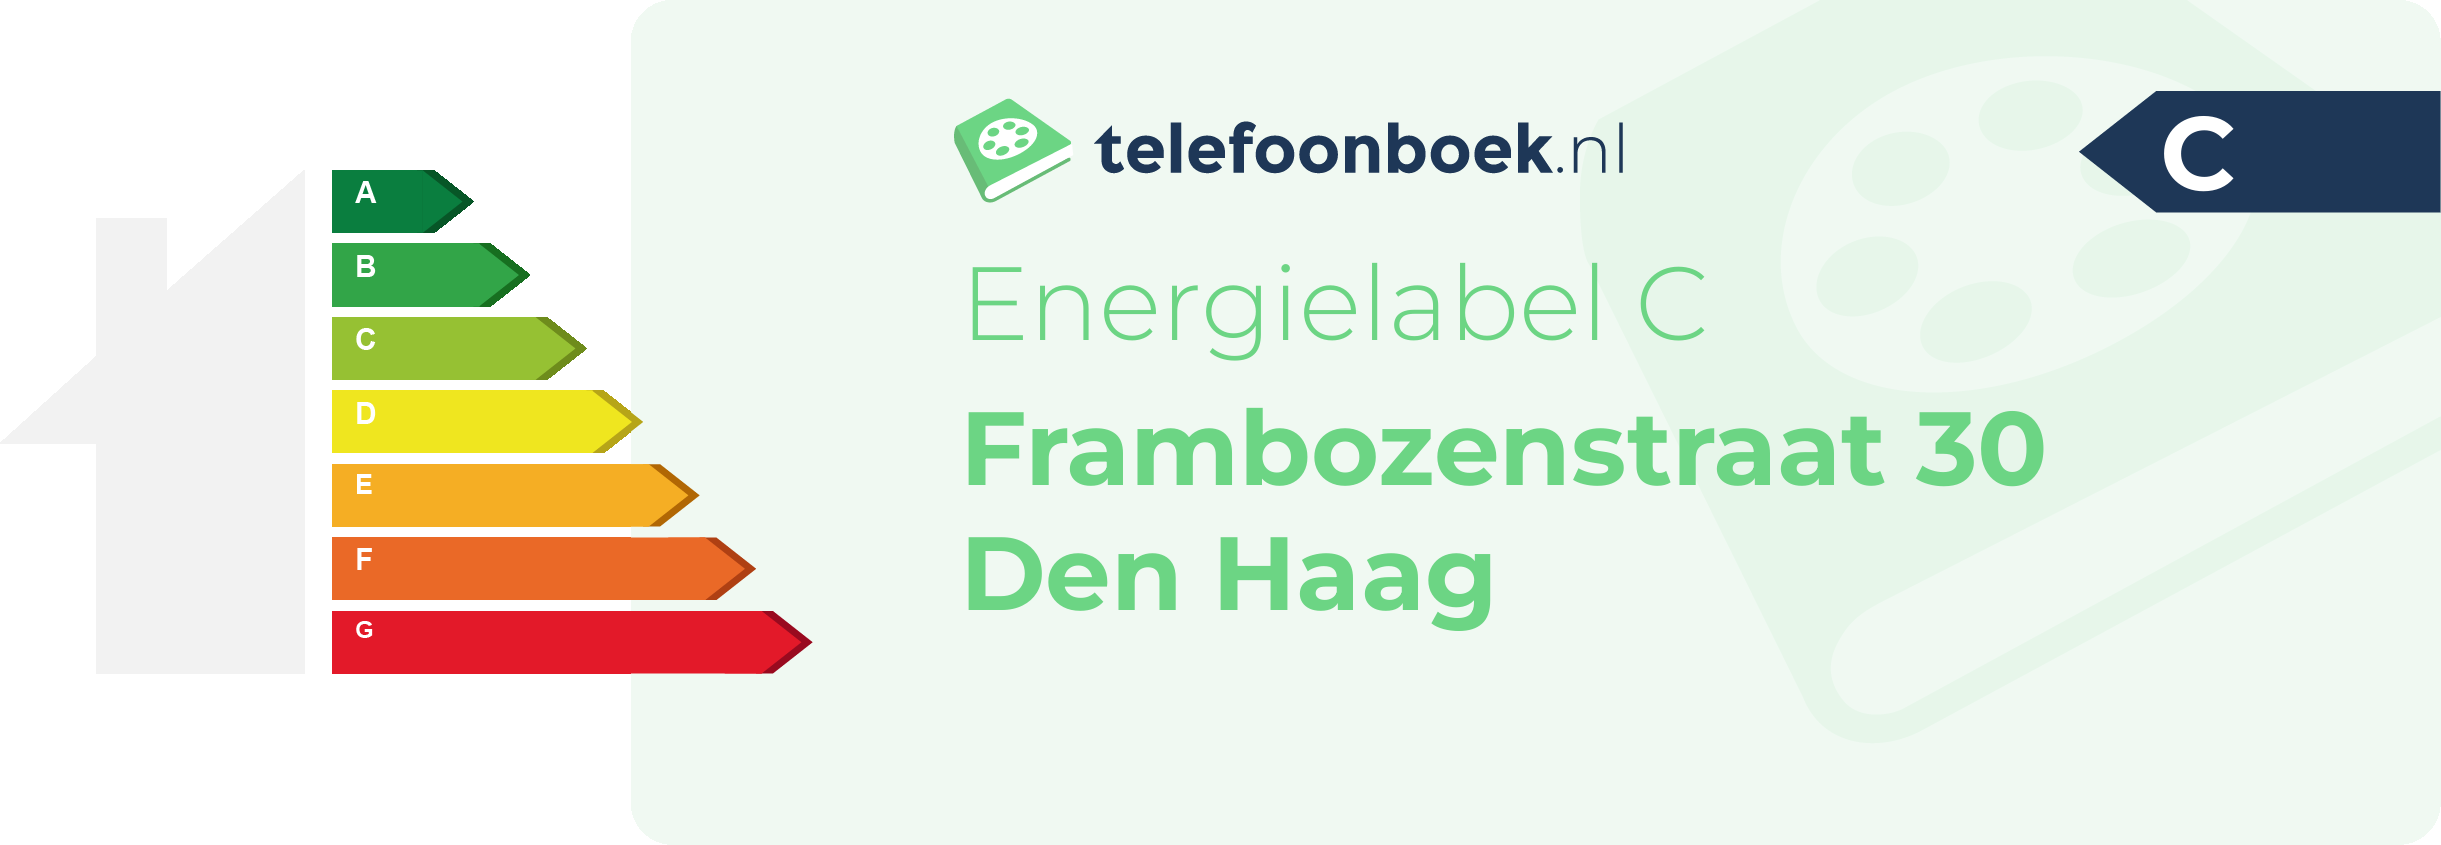 Energielabel Frambozenstraat 30 Den Haag